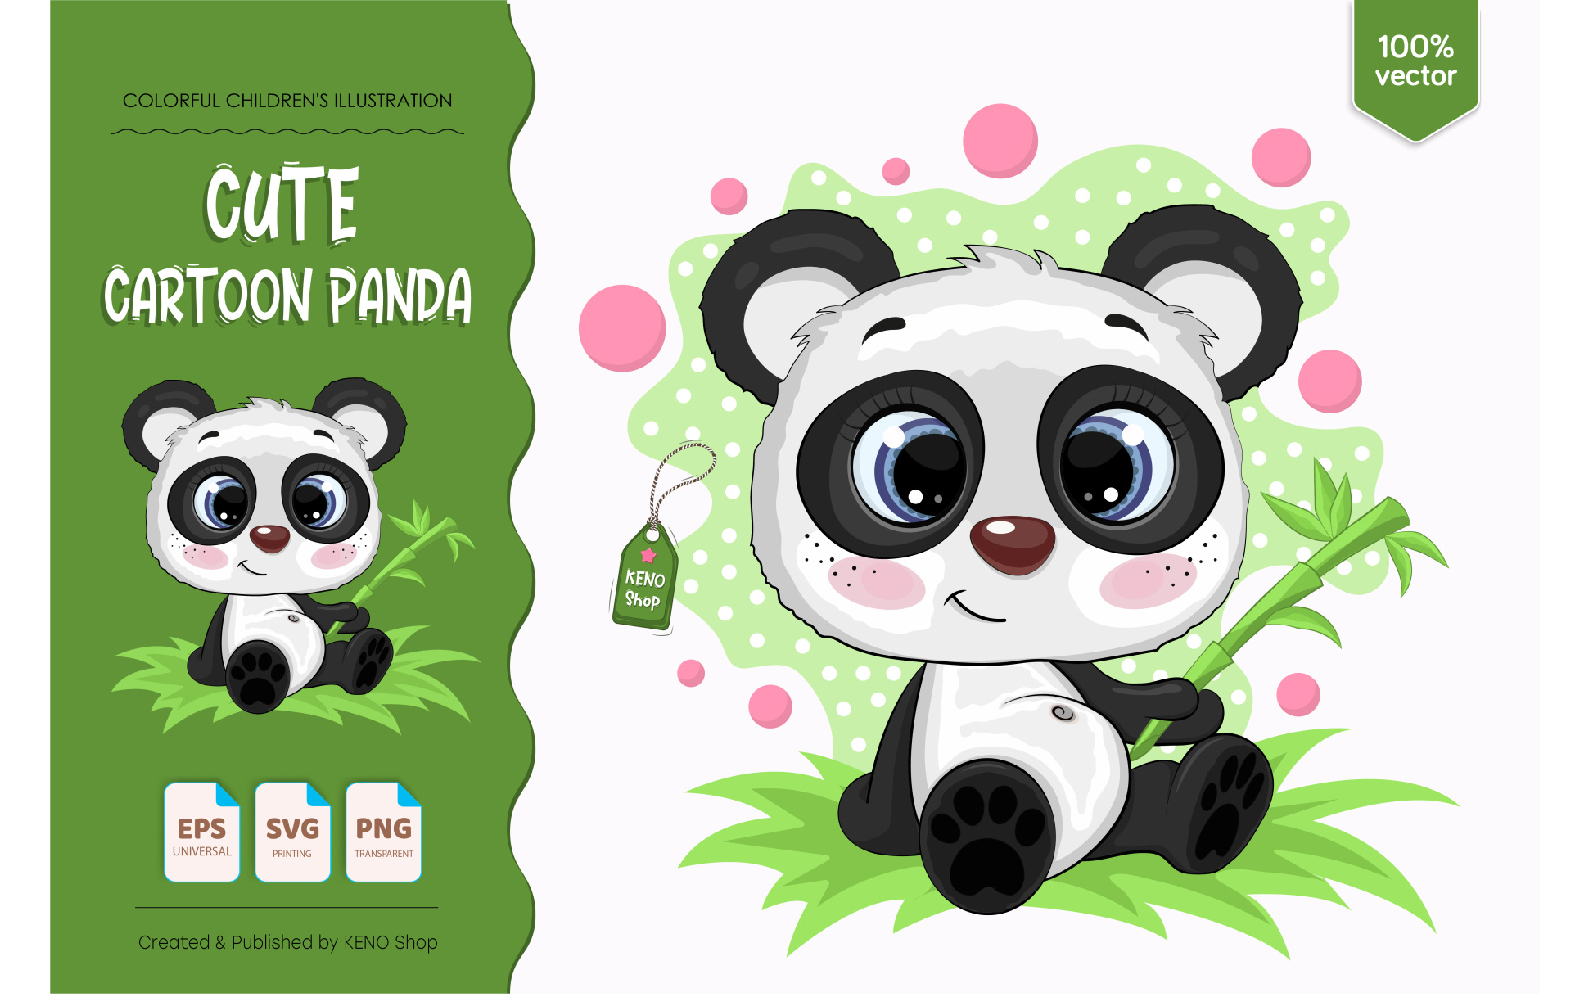 Cute Cartoon Panda - Vector Image